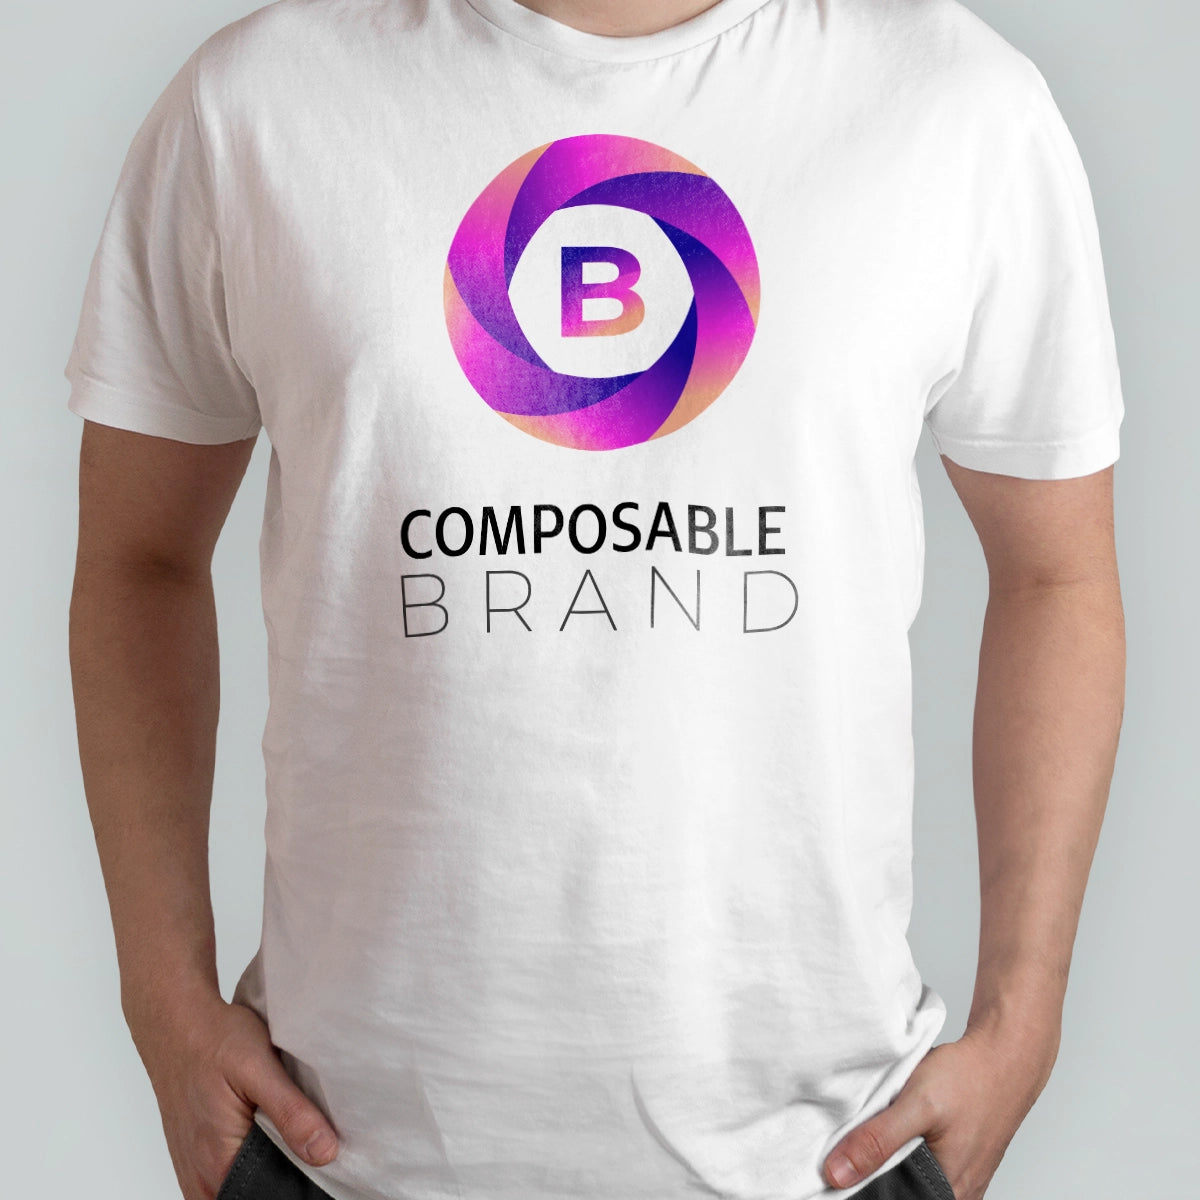 ComposableBrand.com